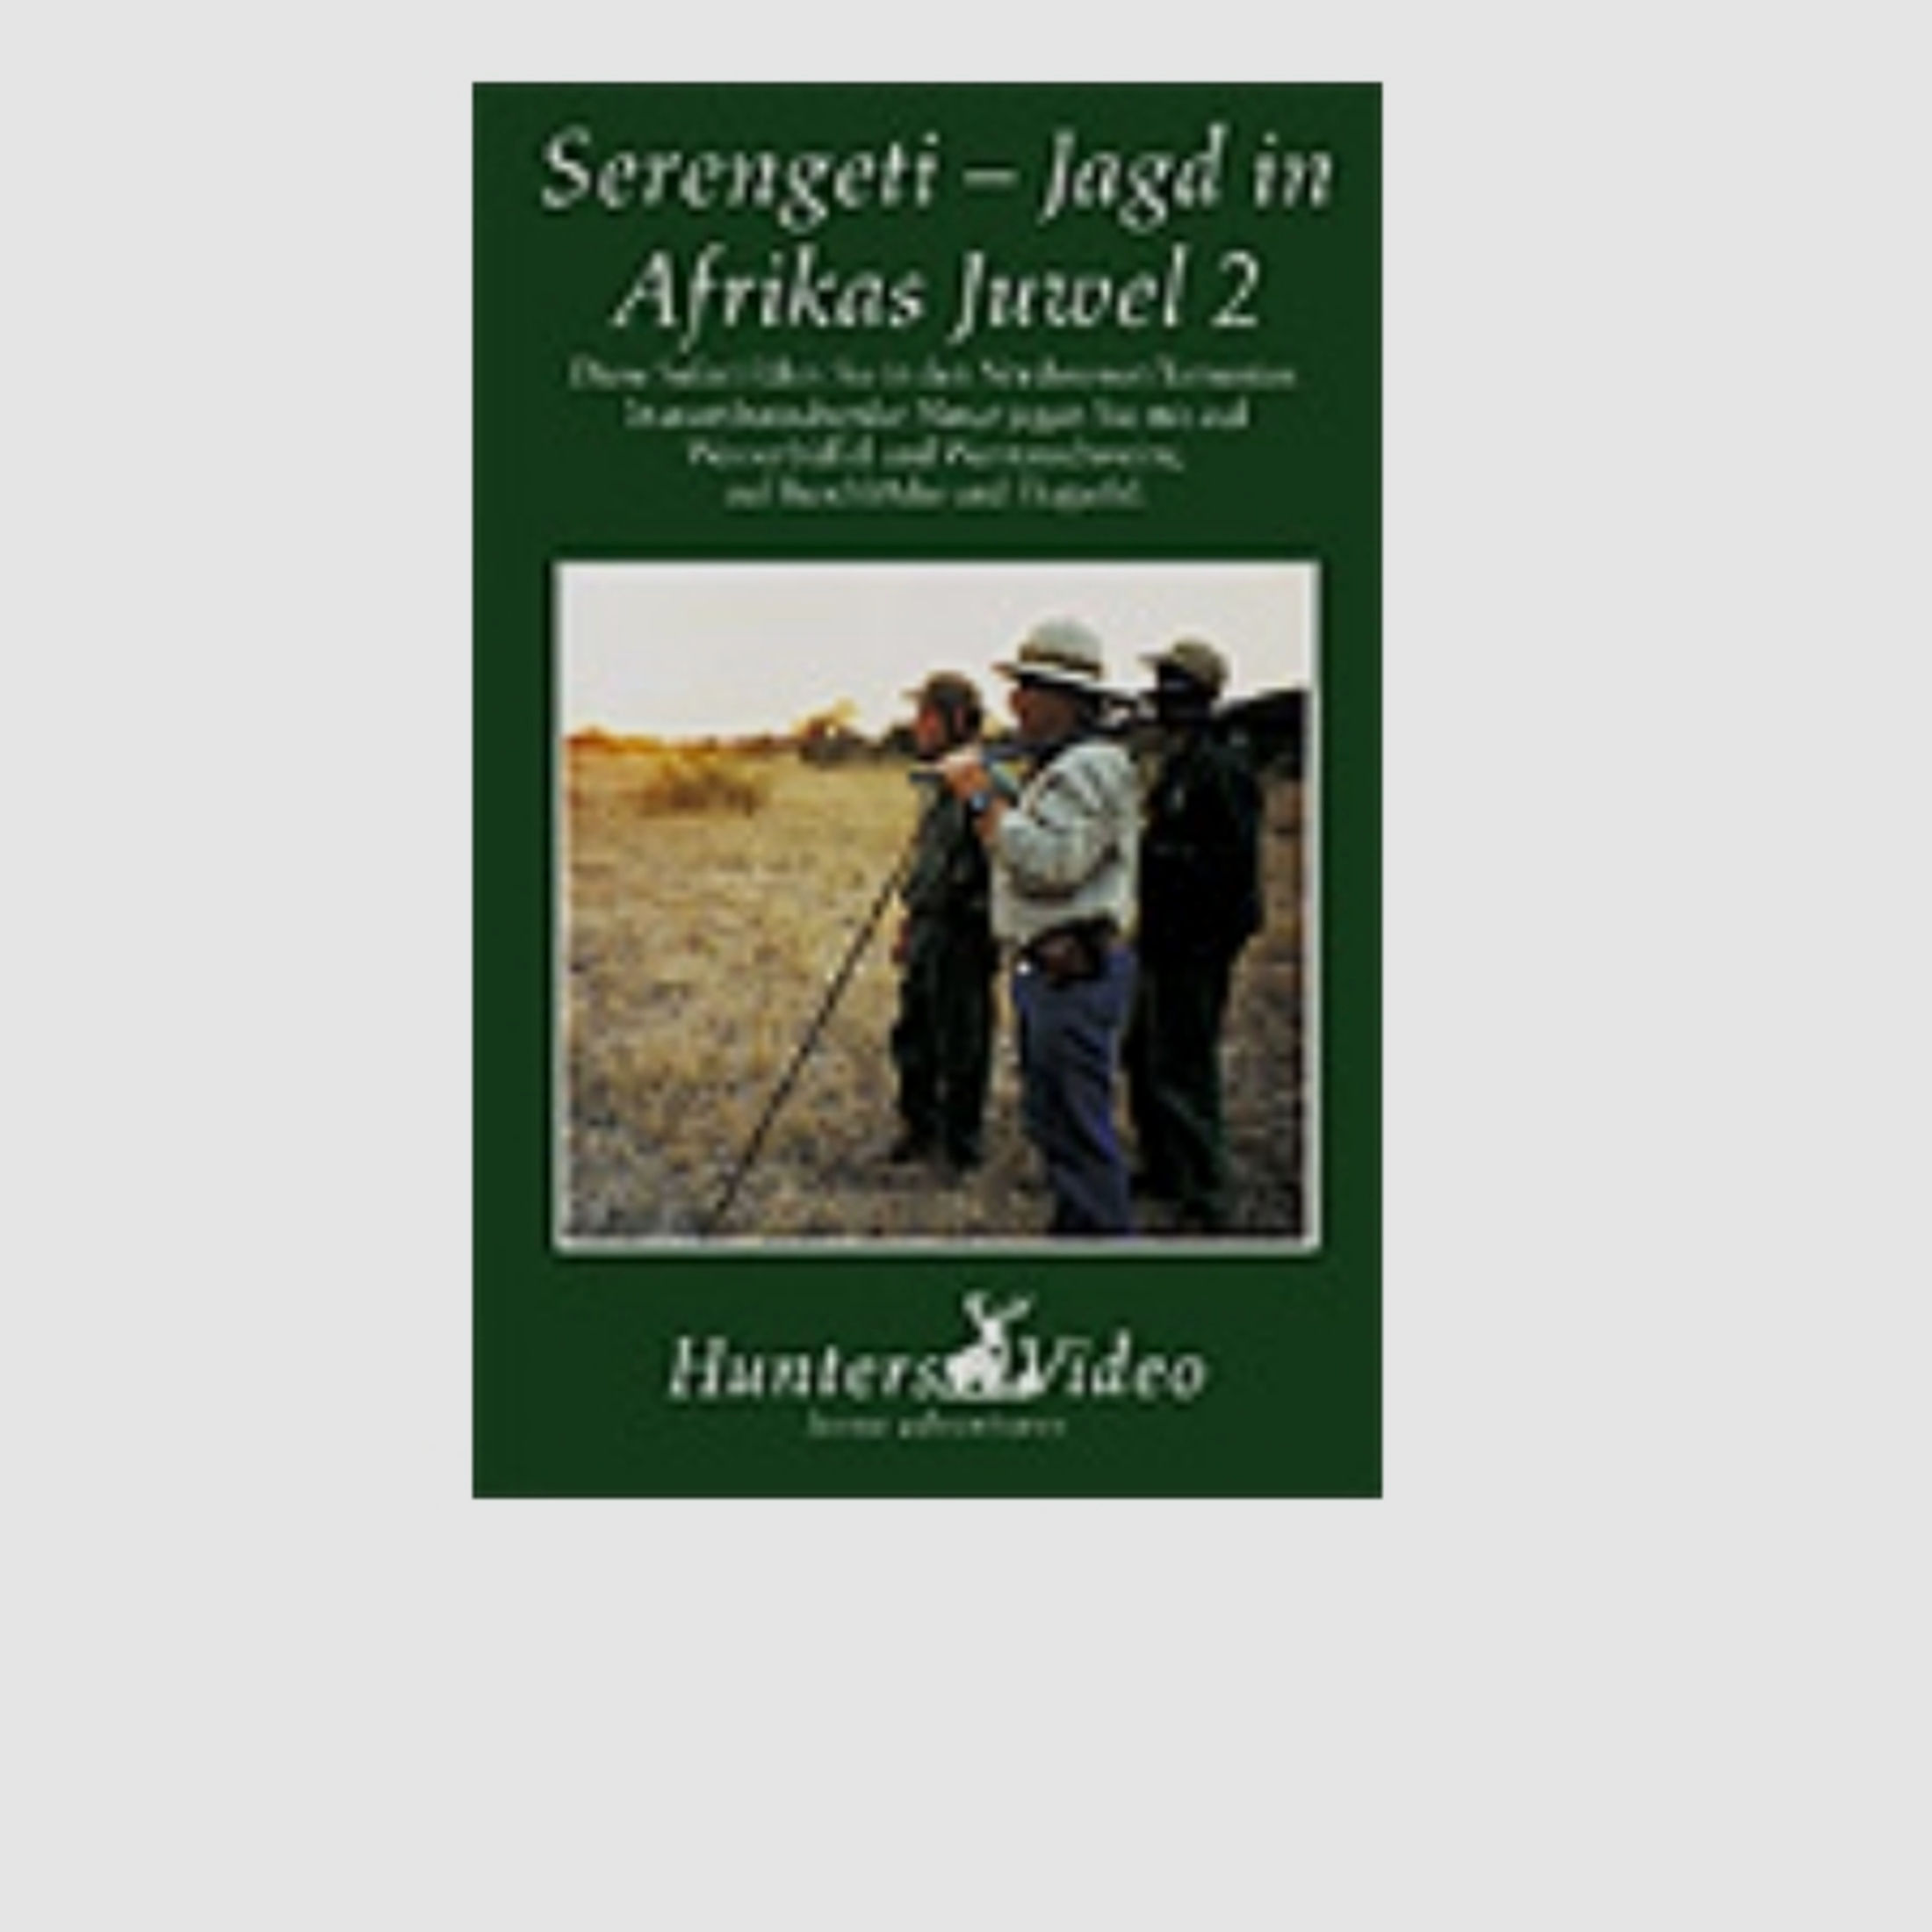 Hunters Video Serengeti - Jagd auf Afrikas Juwel 2